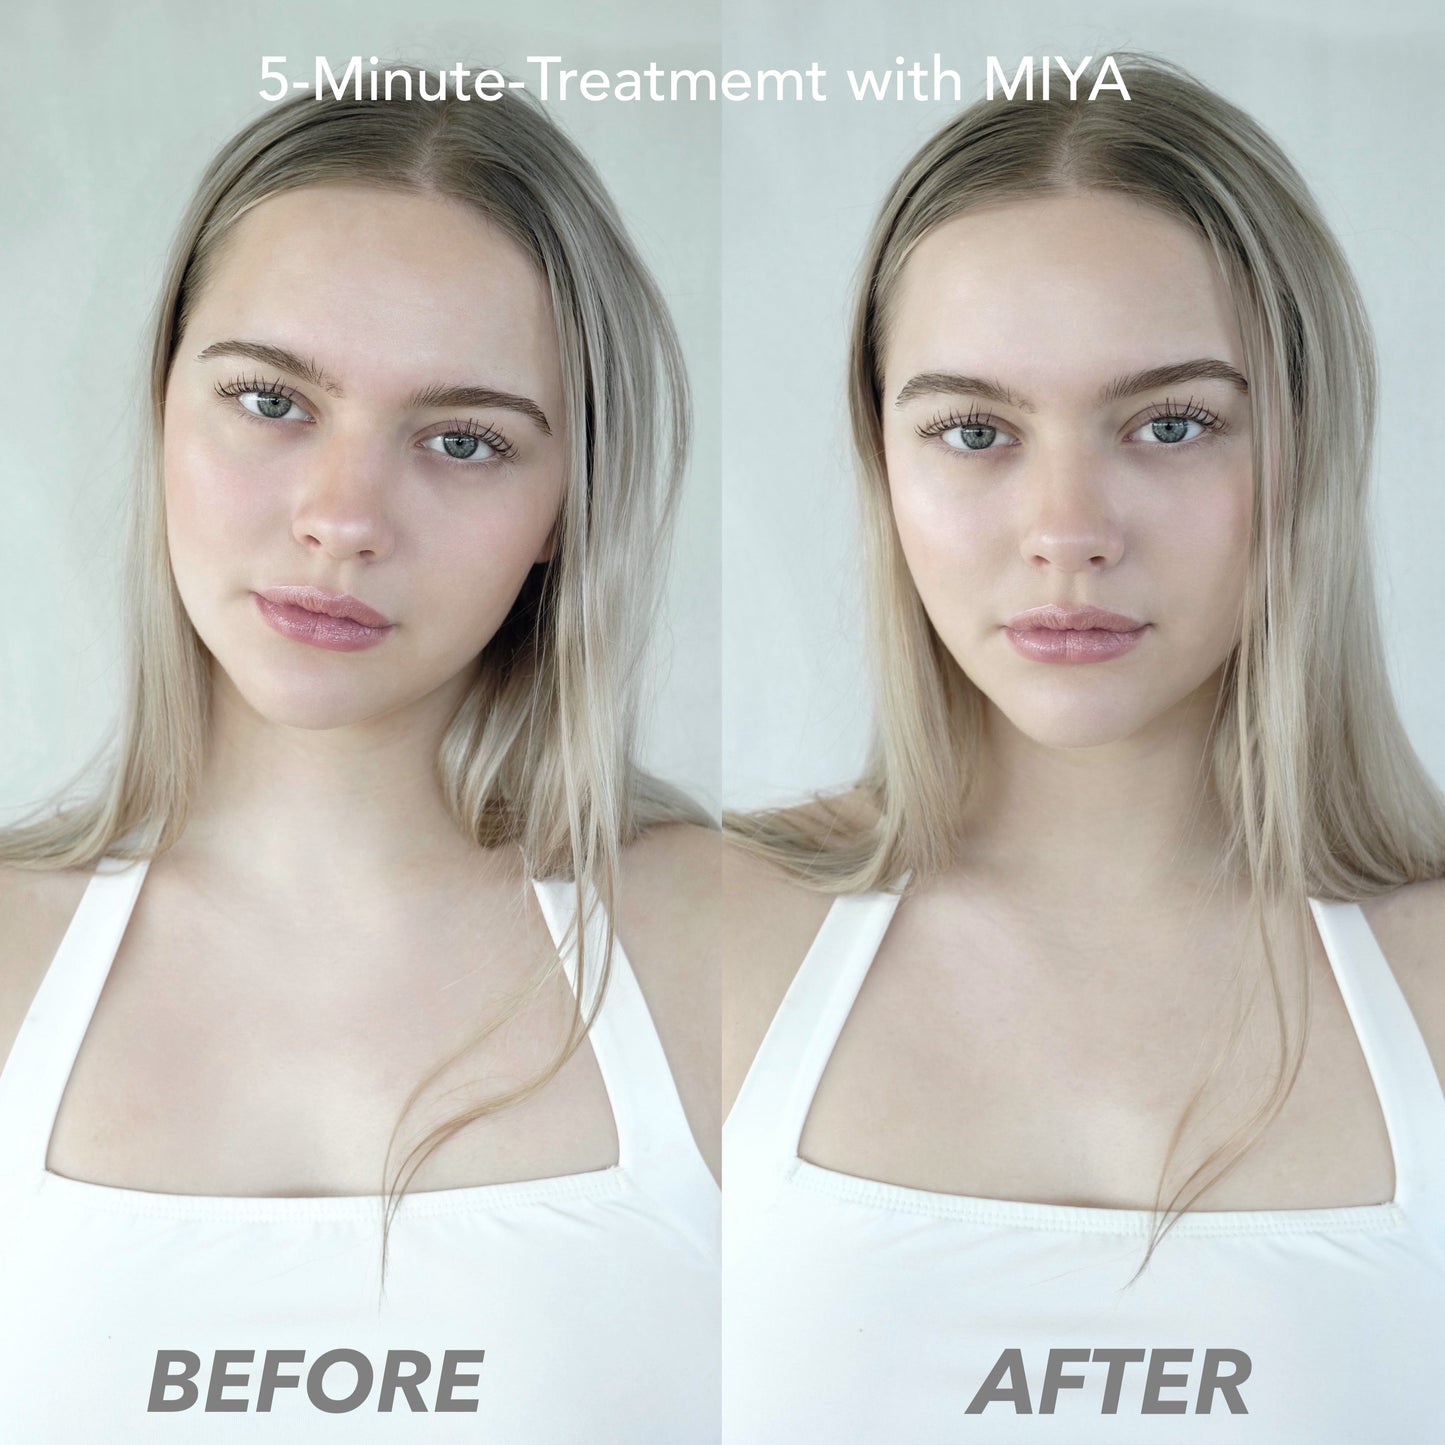 MIYA Microcurrent Facial Toning Device